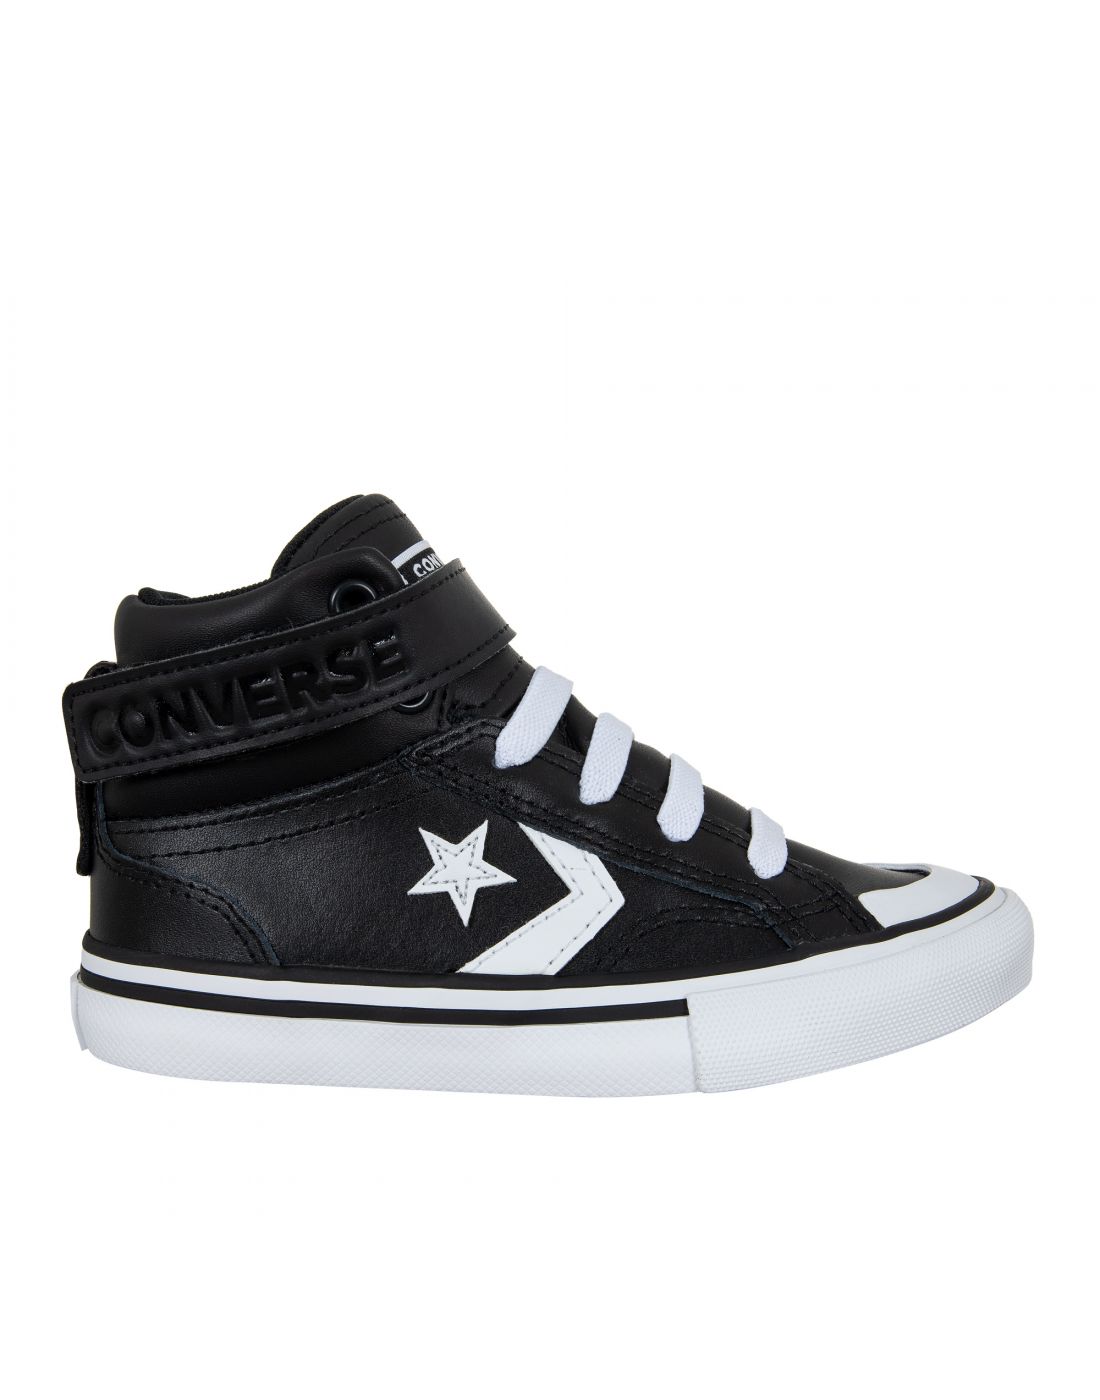 Παιδικά Παπούτσια Sneakers All Star, Converse, 23270394 | LapinKids.com |  LAPIN KIDS